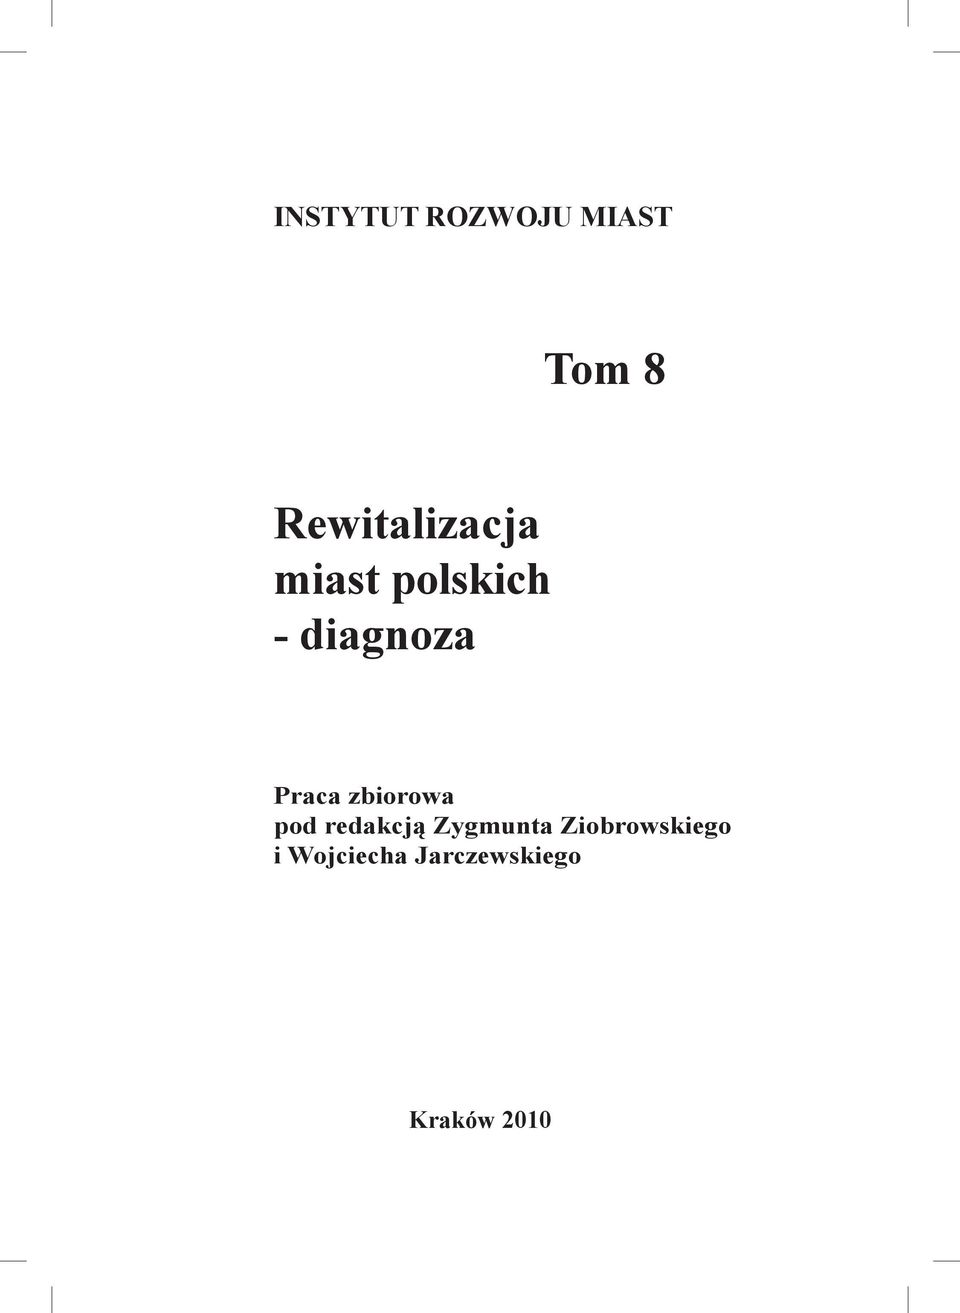 Praca zbiorowa pod redakcją Zygmunta